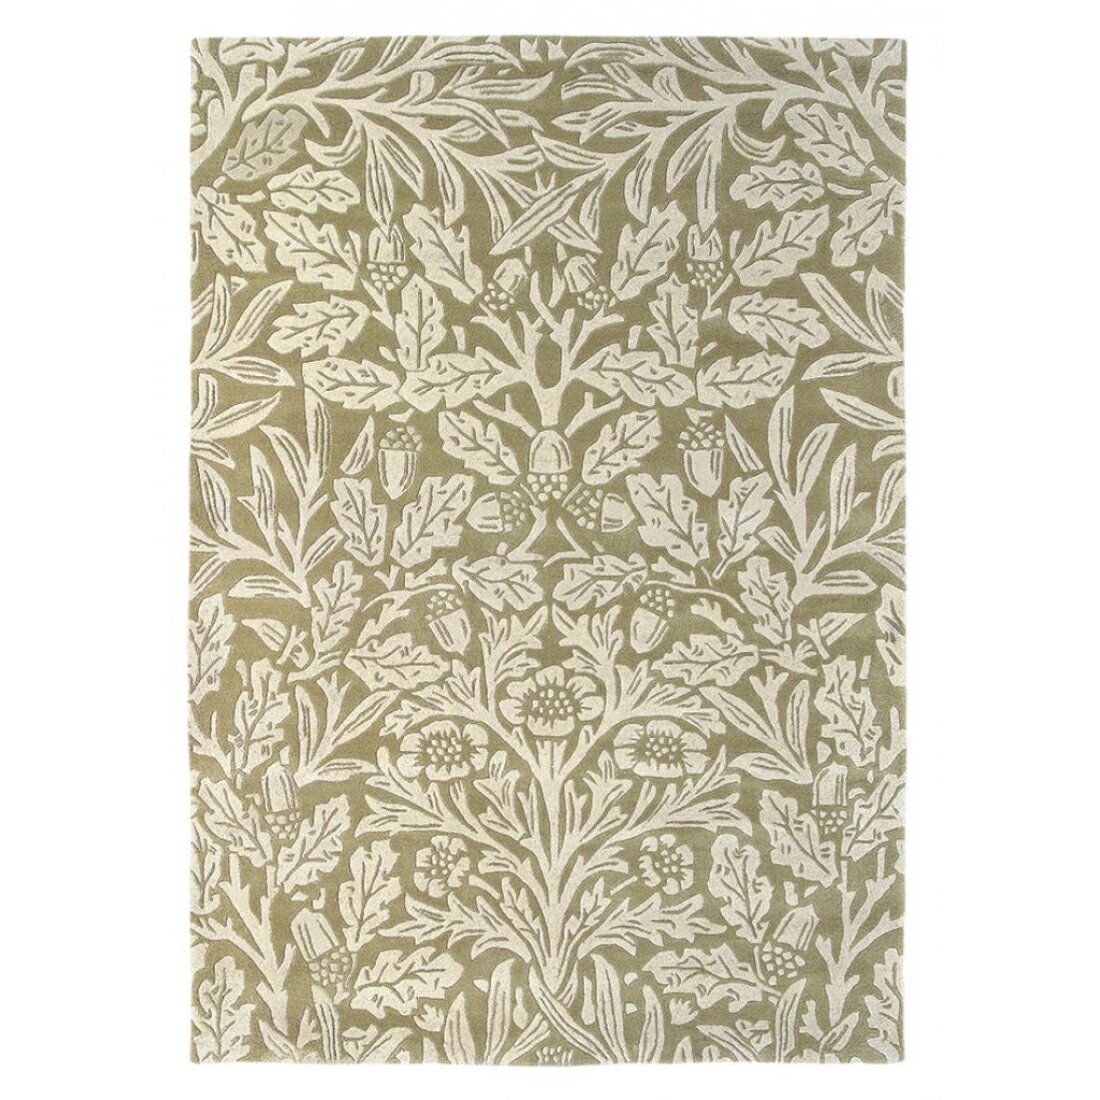 英國Morris&Co羊毛地毯 OAK 27904  古典圖騰 經典優雅